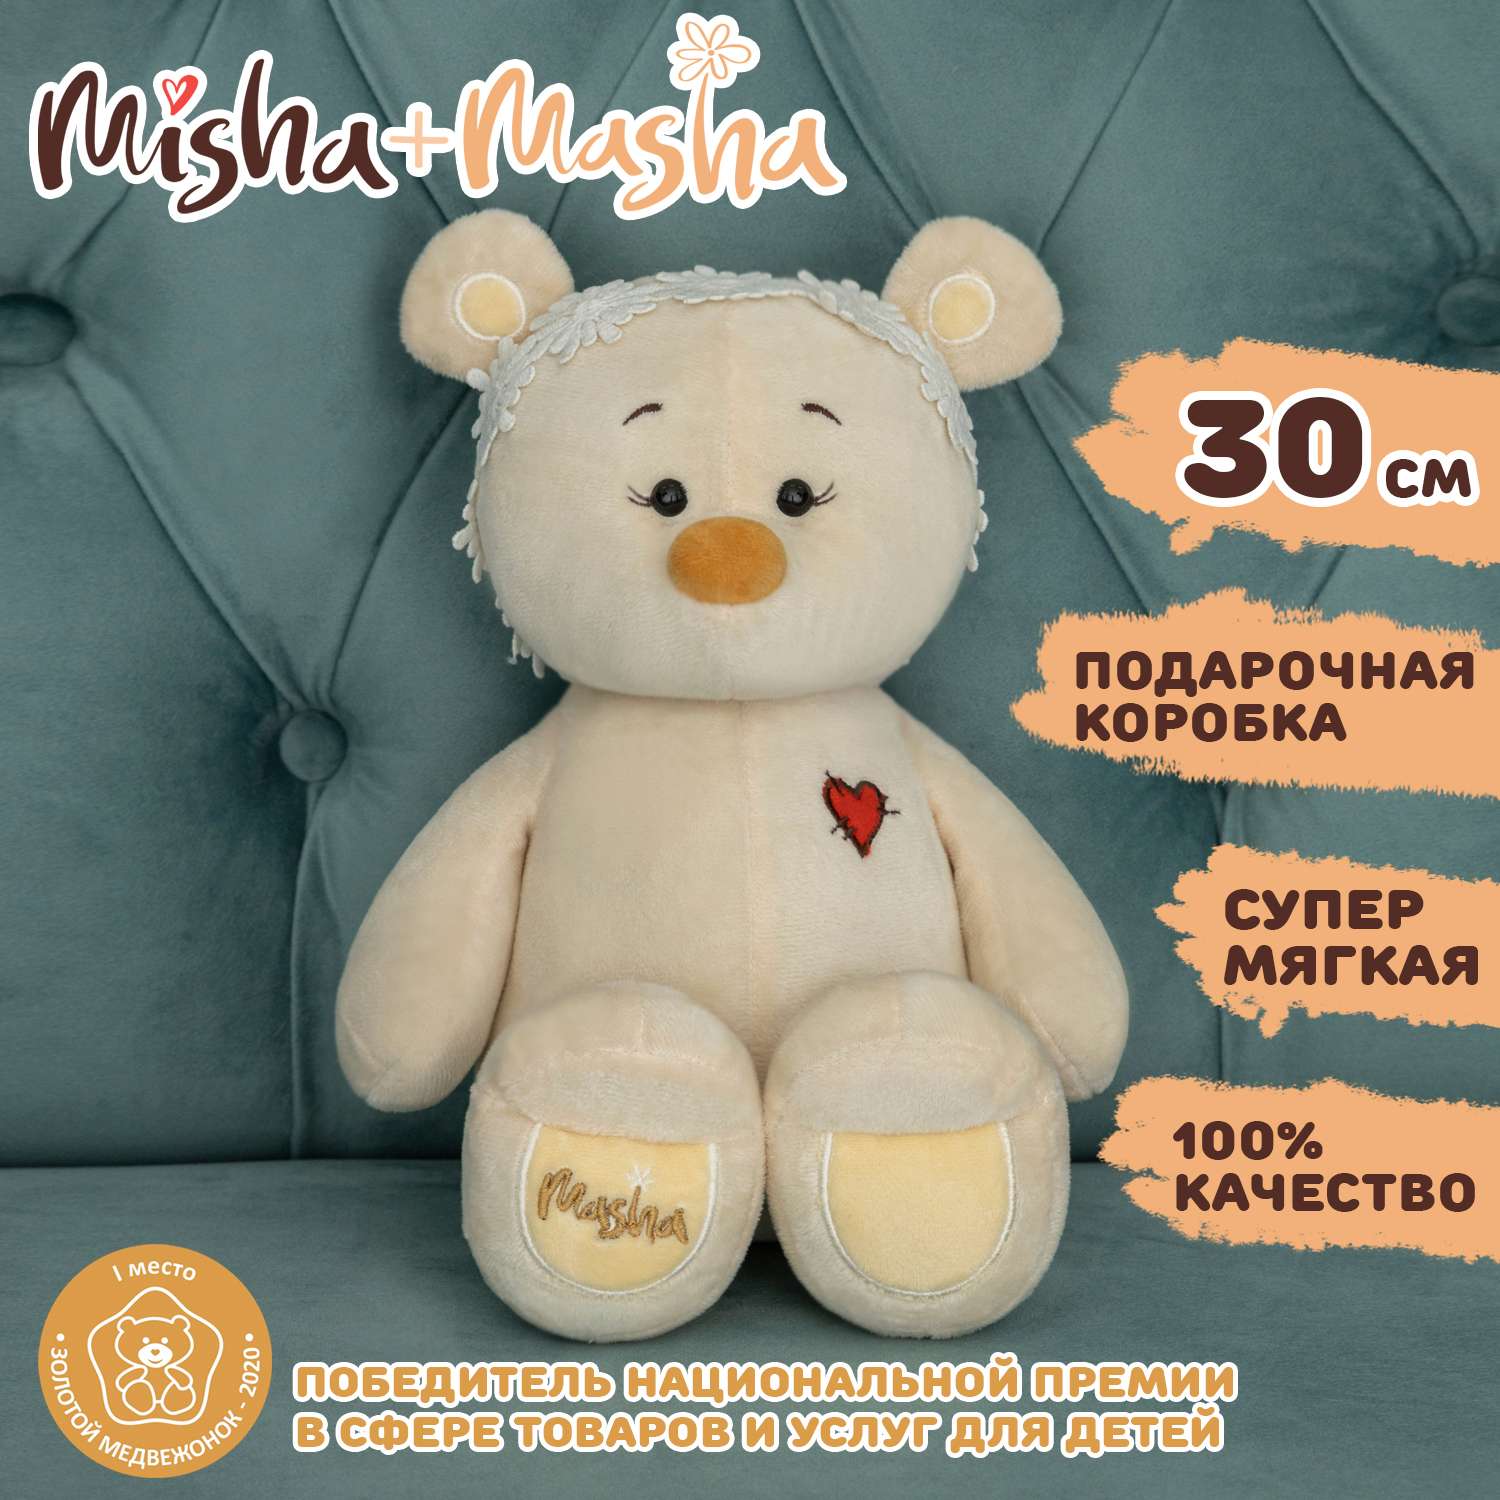 Мягкая игрушка KULT of toys Плюшевый медведь Masha с повязкой 30 см - фото 2